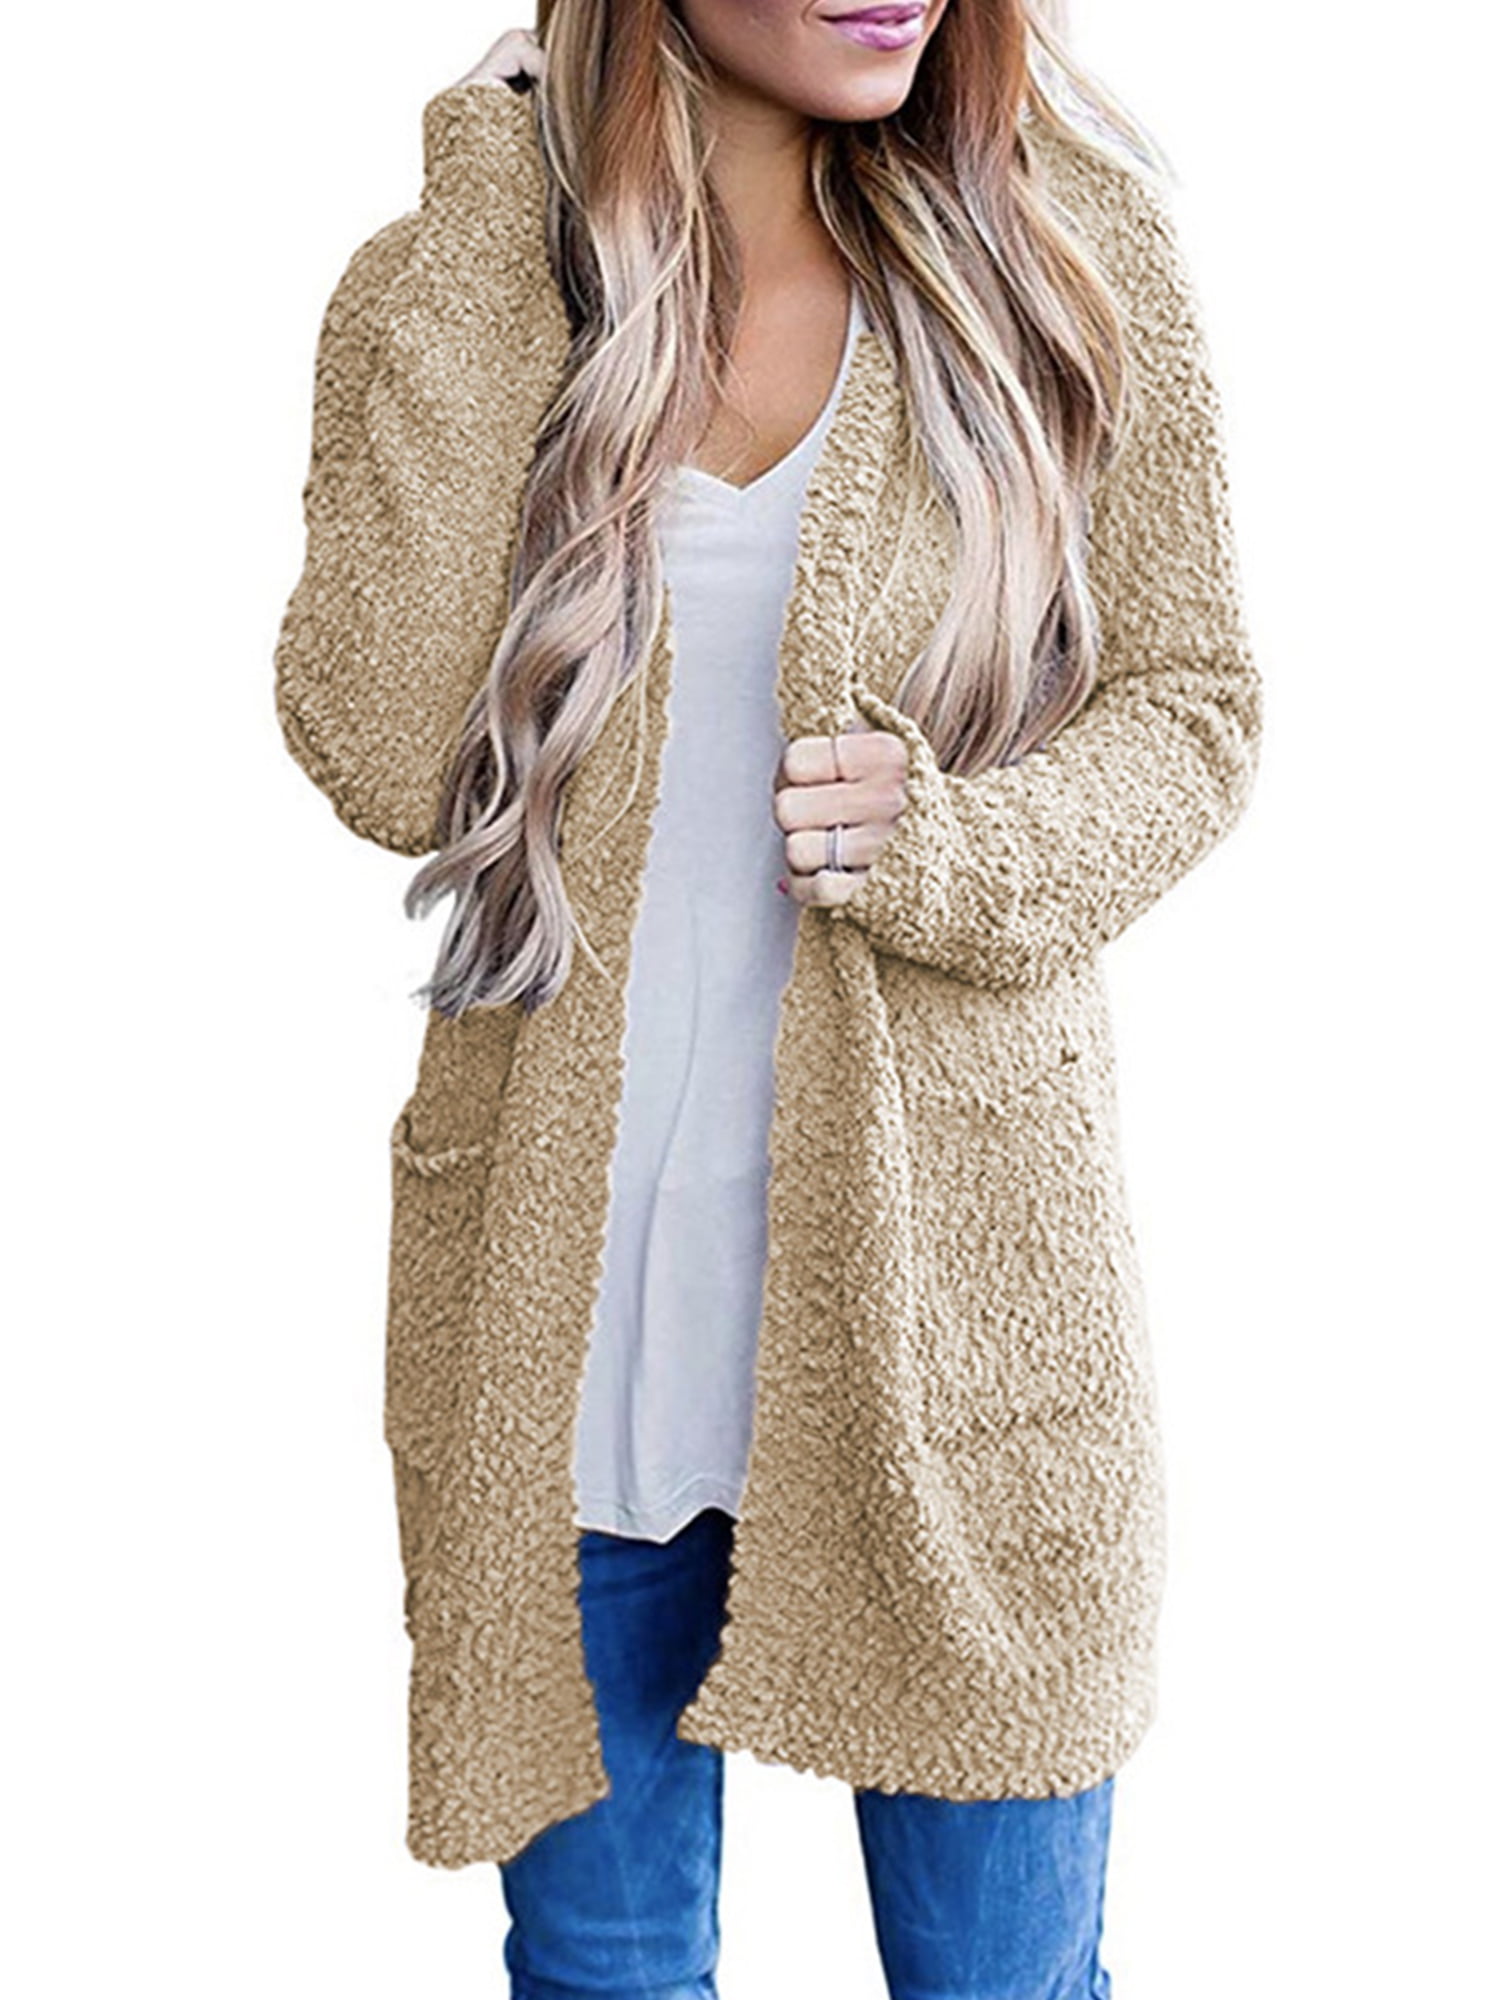 Buyao Womens Fuzzy Fleece Open Front Cardigan Long Sleeve Winter Warm Oversized Sherpa Jacket Drape Cardigans Coats